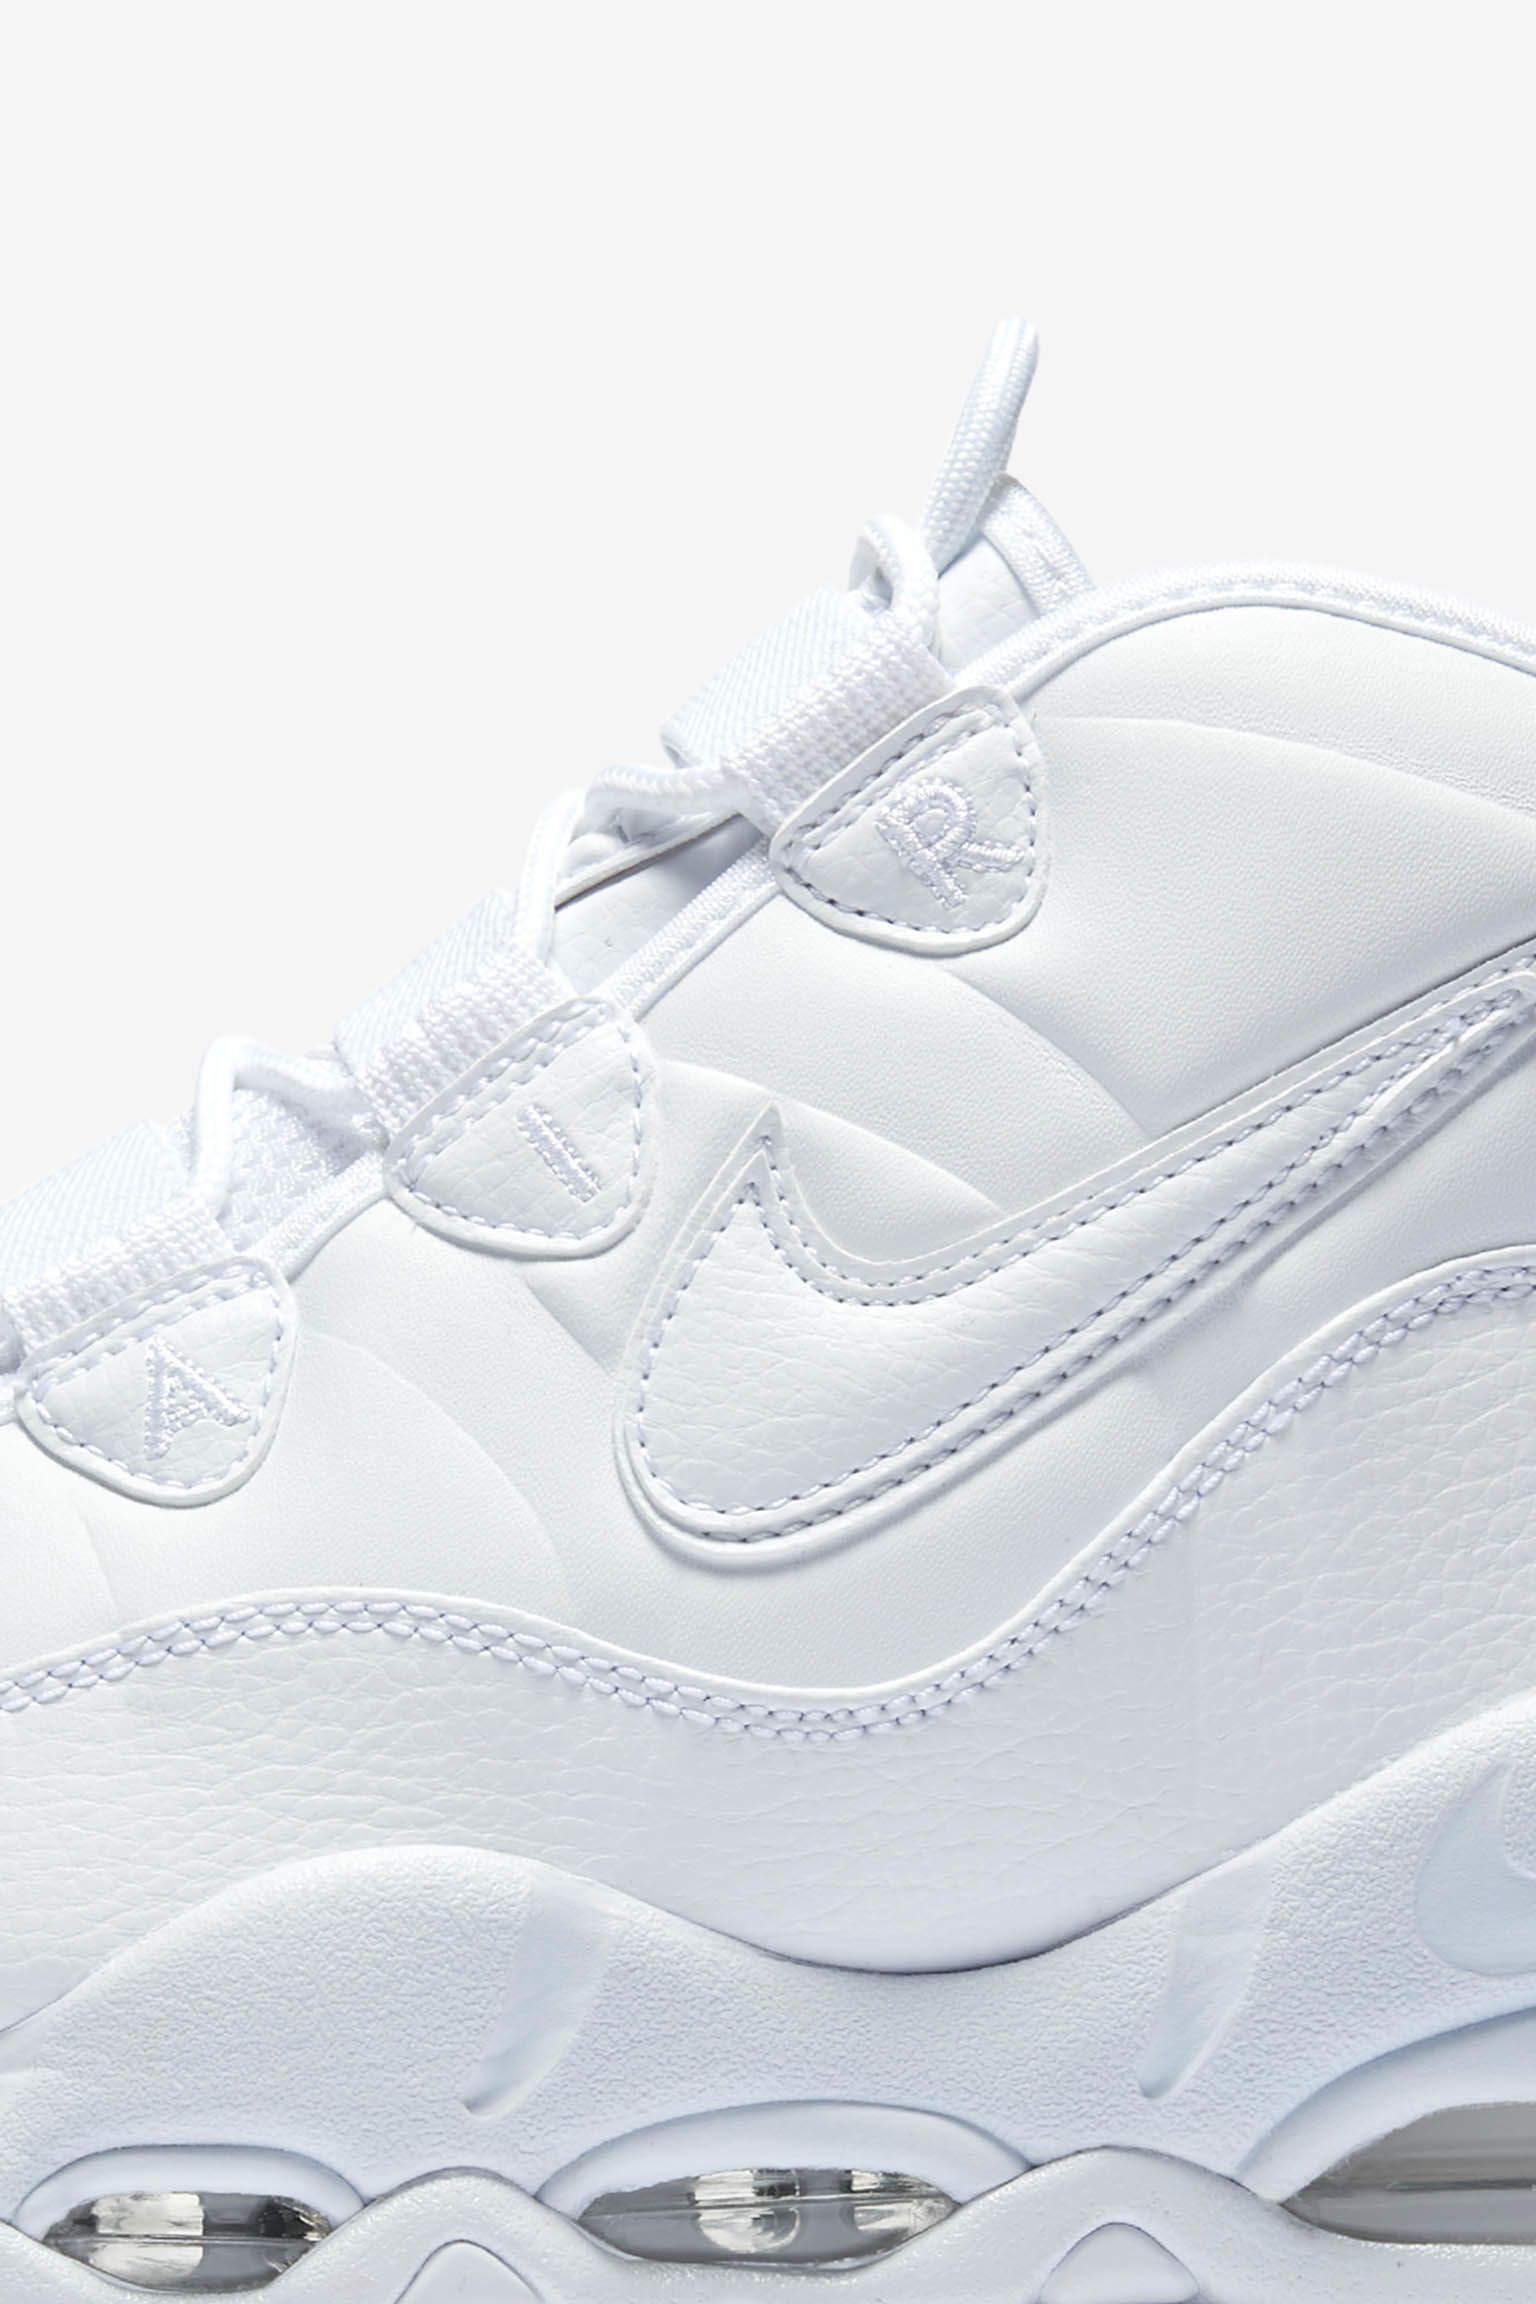 ナイキ エア マックス アップテンポ 95 'White on White' 発売日. Nike